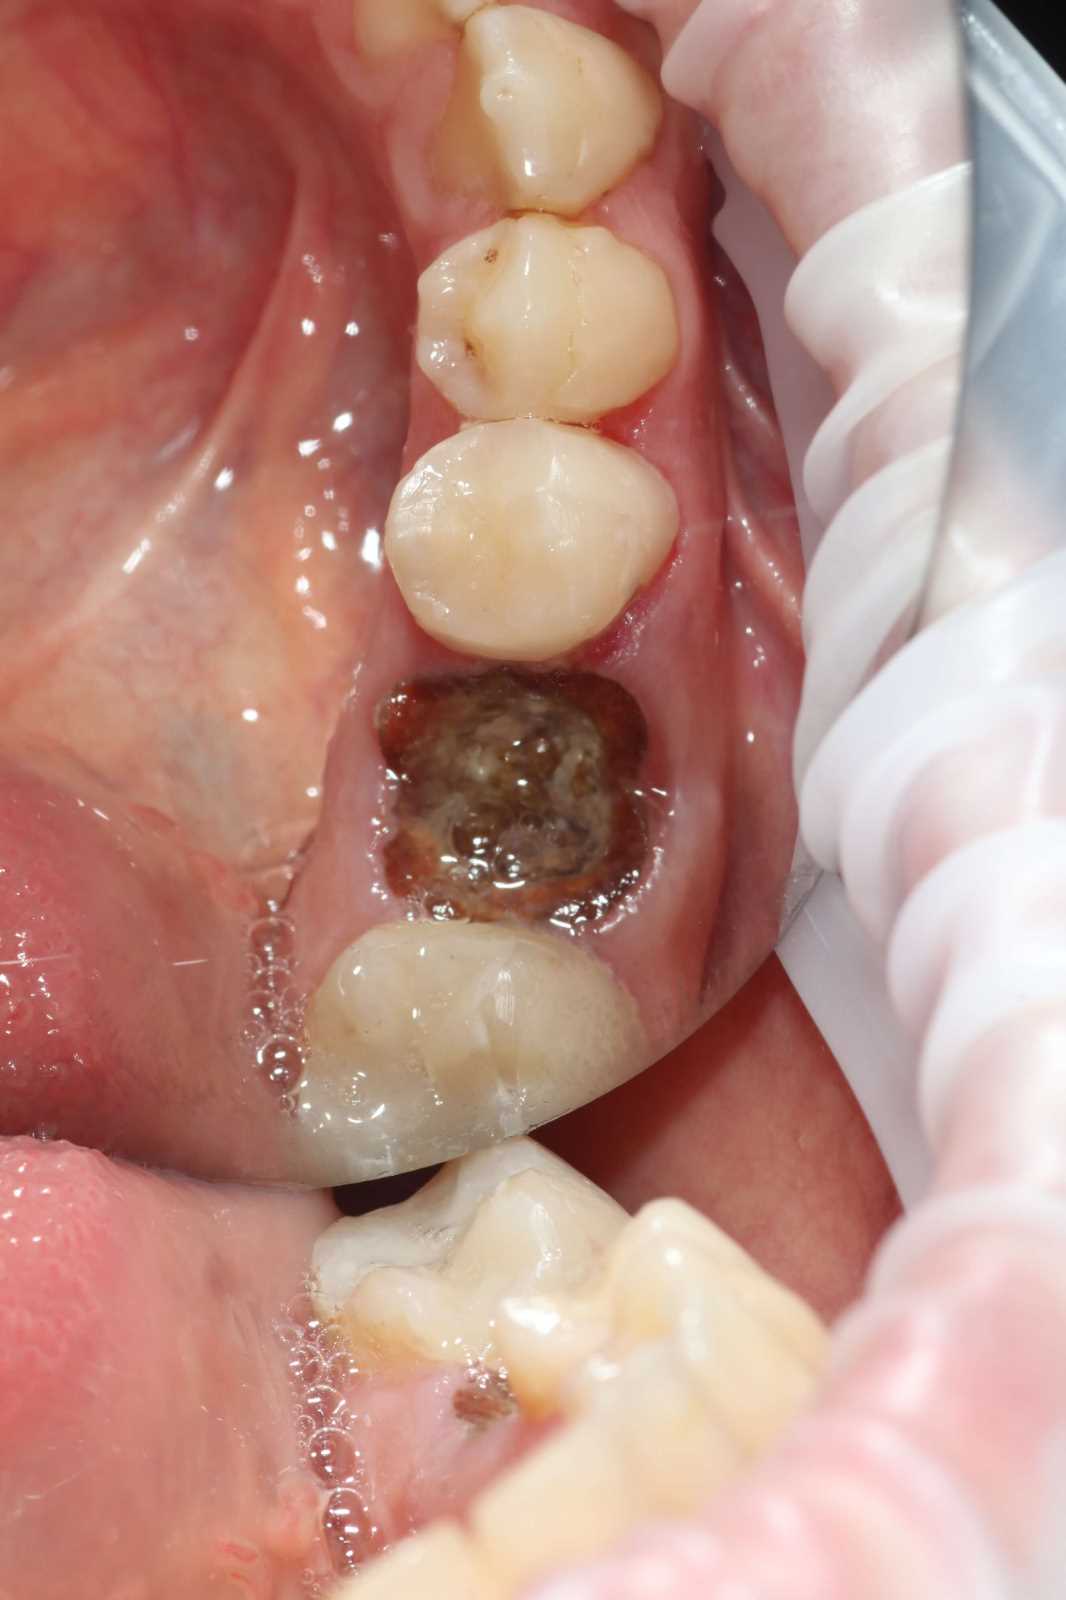 Удаление зуба безболезненно — все, что вам нужно знать о процедуре в бассейне